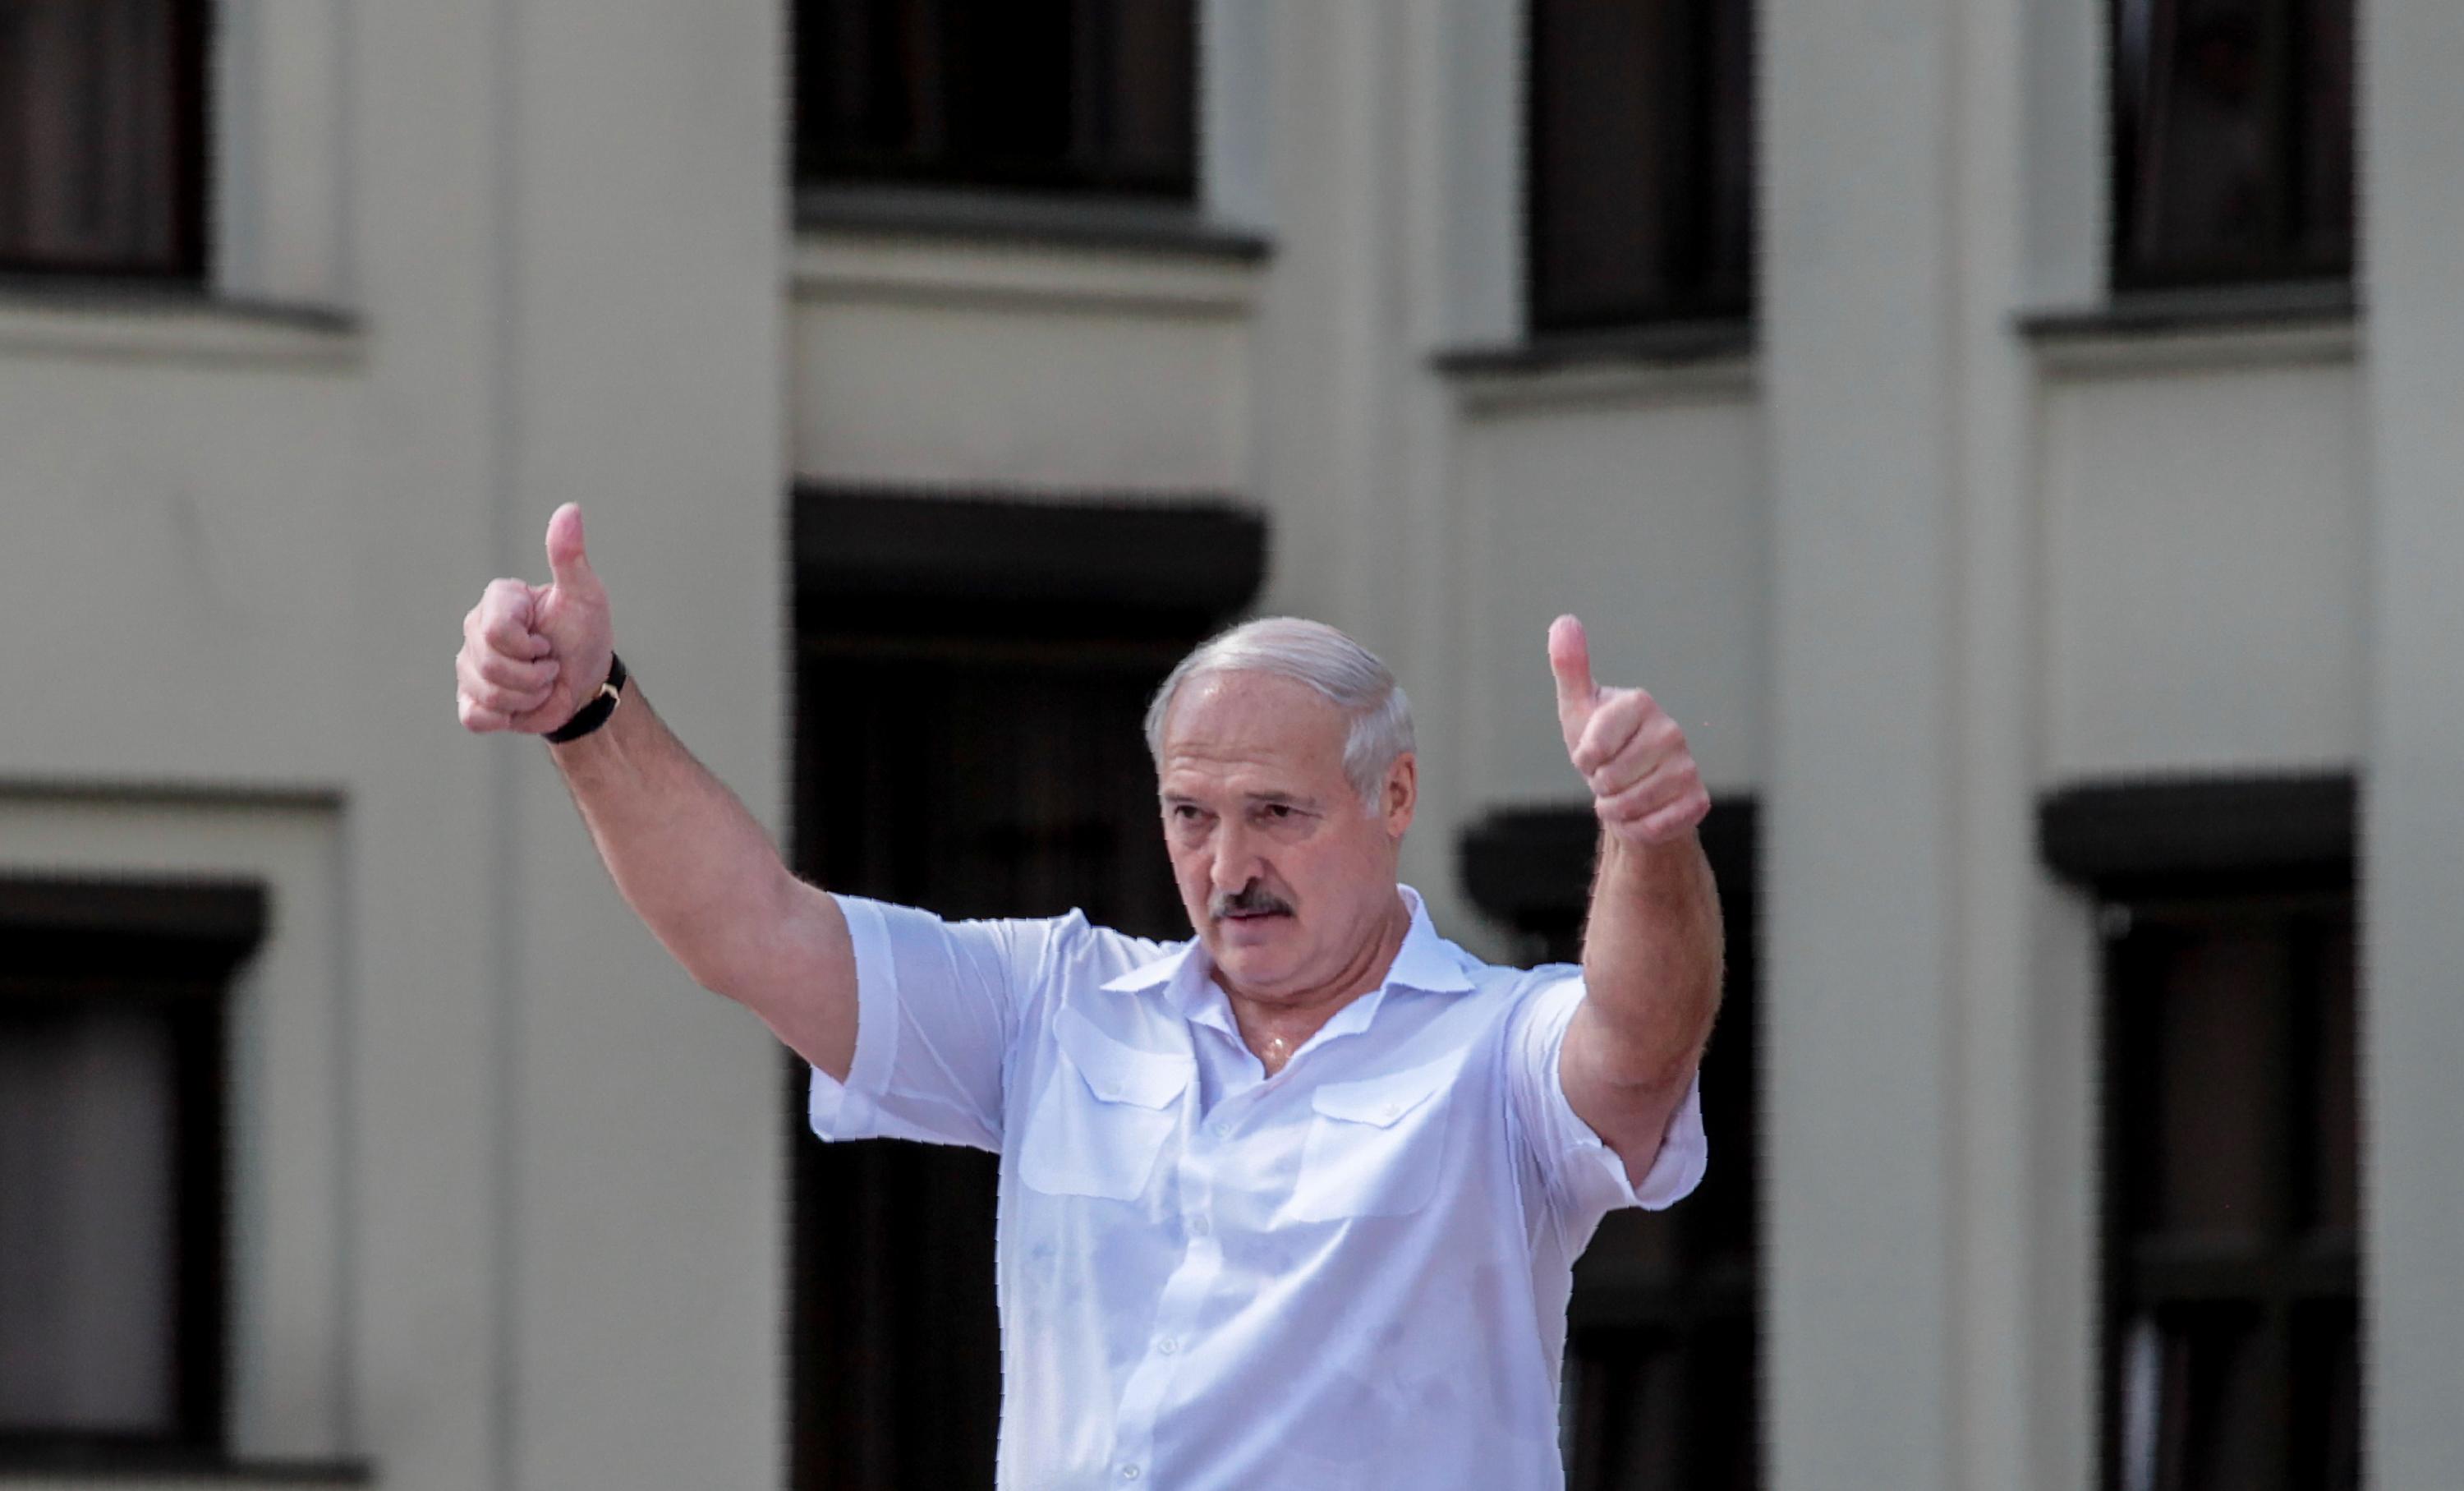 Lukasenka szerint a NATO akarja megsemmisíteni a fehérorosz nemzetet